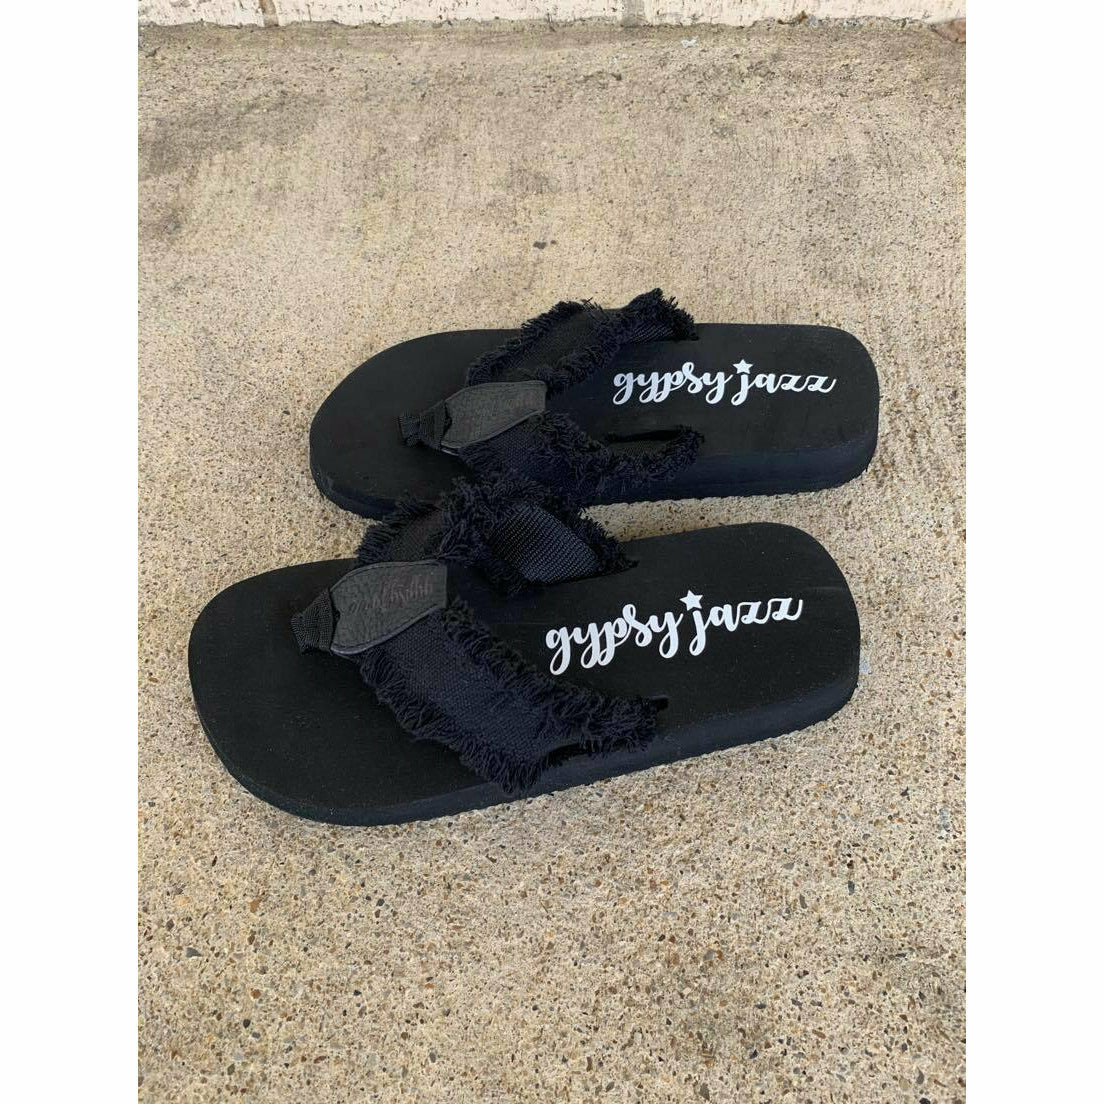 All Black Flip Flop Sandals